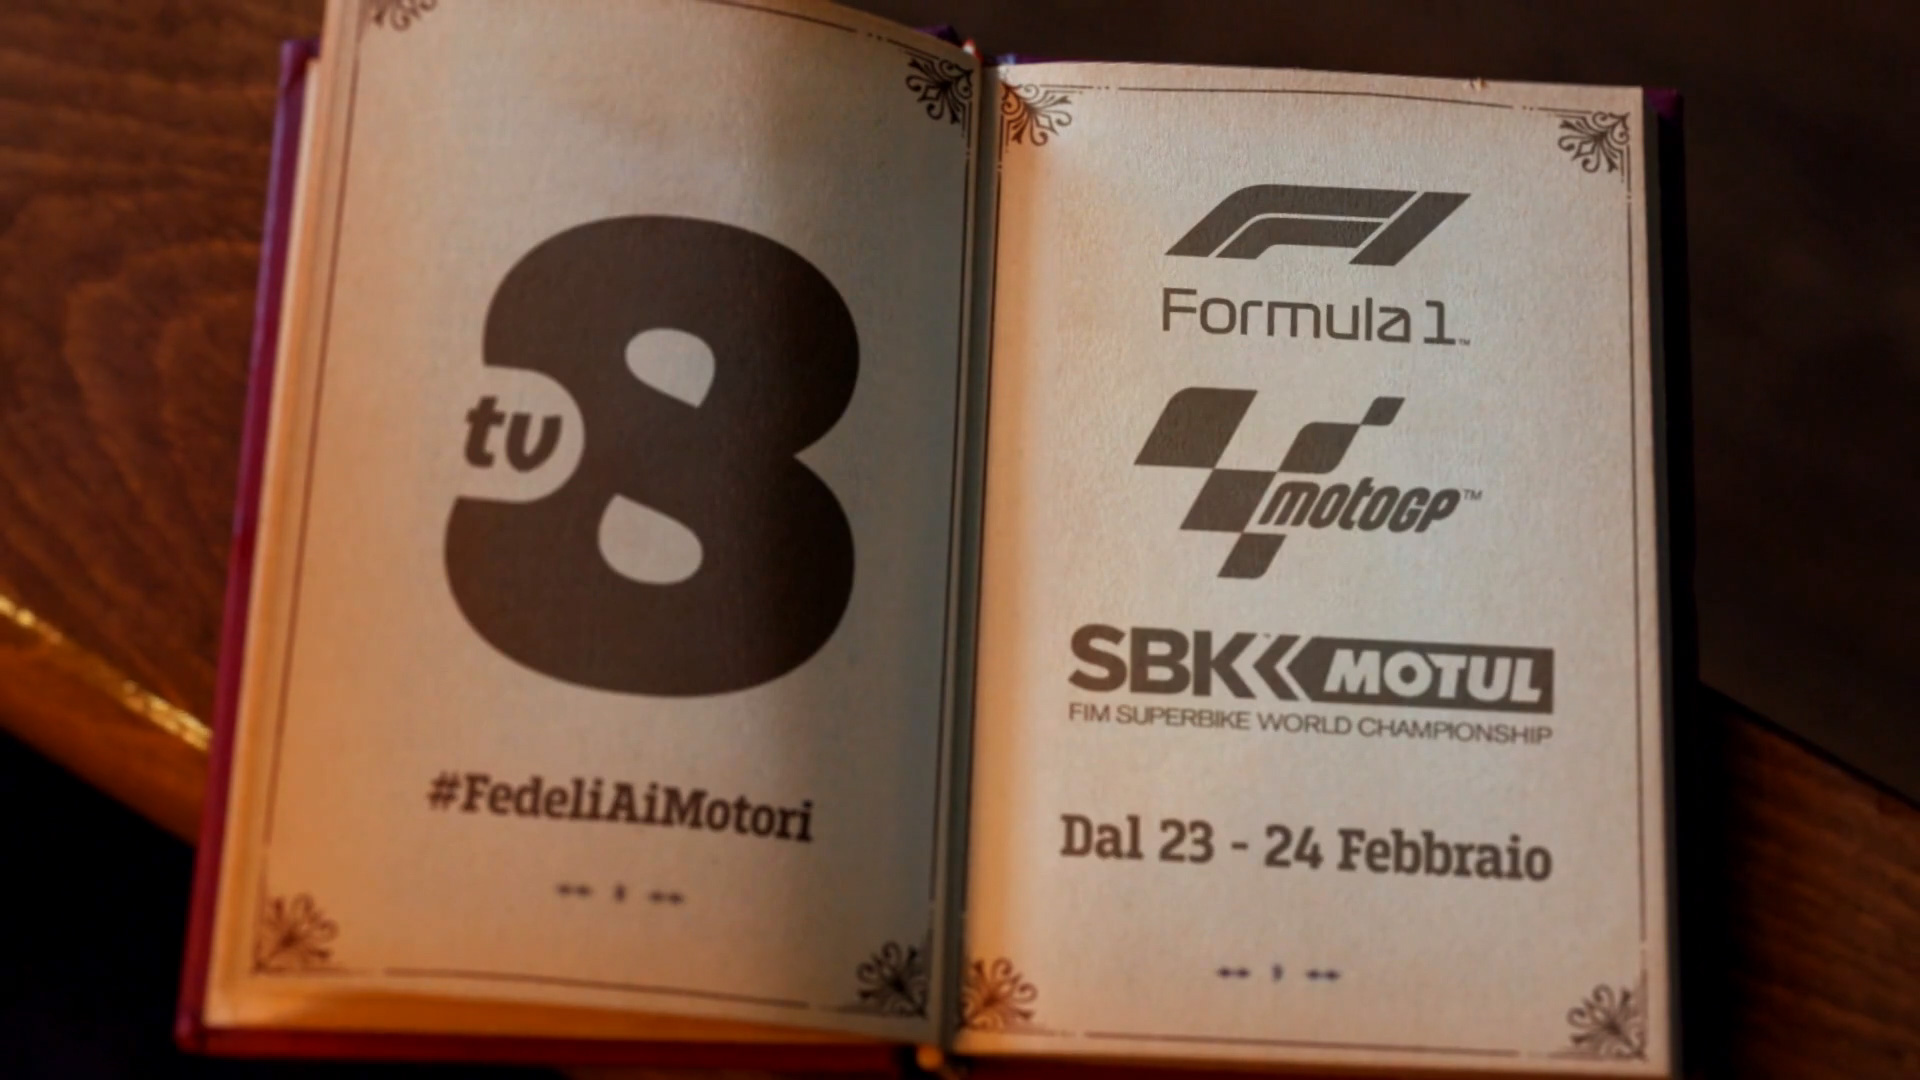 Motori 2019 su TV8: Formula 1, MotoMondiale e World SBK in chiaro